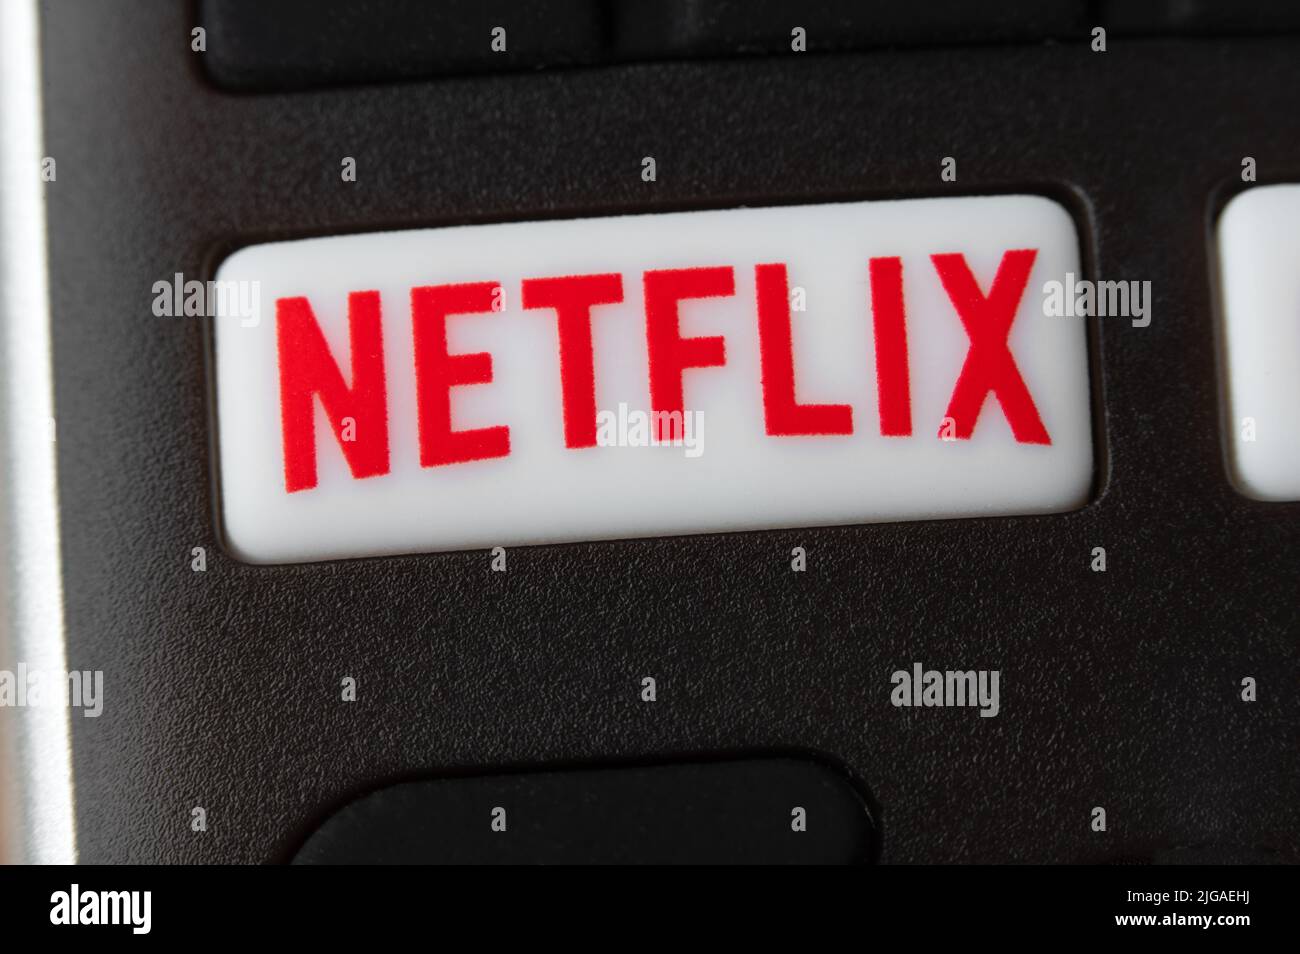 Nueva York, EE.UU. - 14 de julio de 2022: Detalle del mando a distancia con botón Netflix. Netflix es un servicio de suscripción líder internacional para ver la televisión Foto de stock